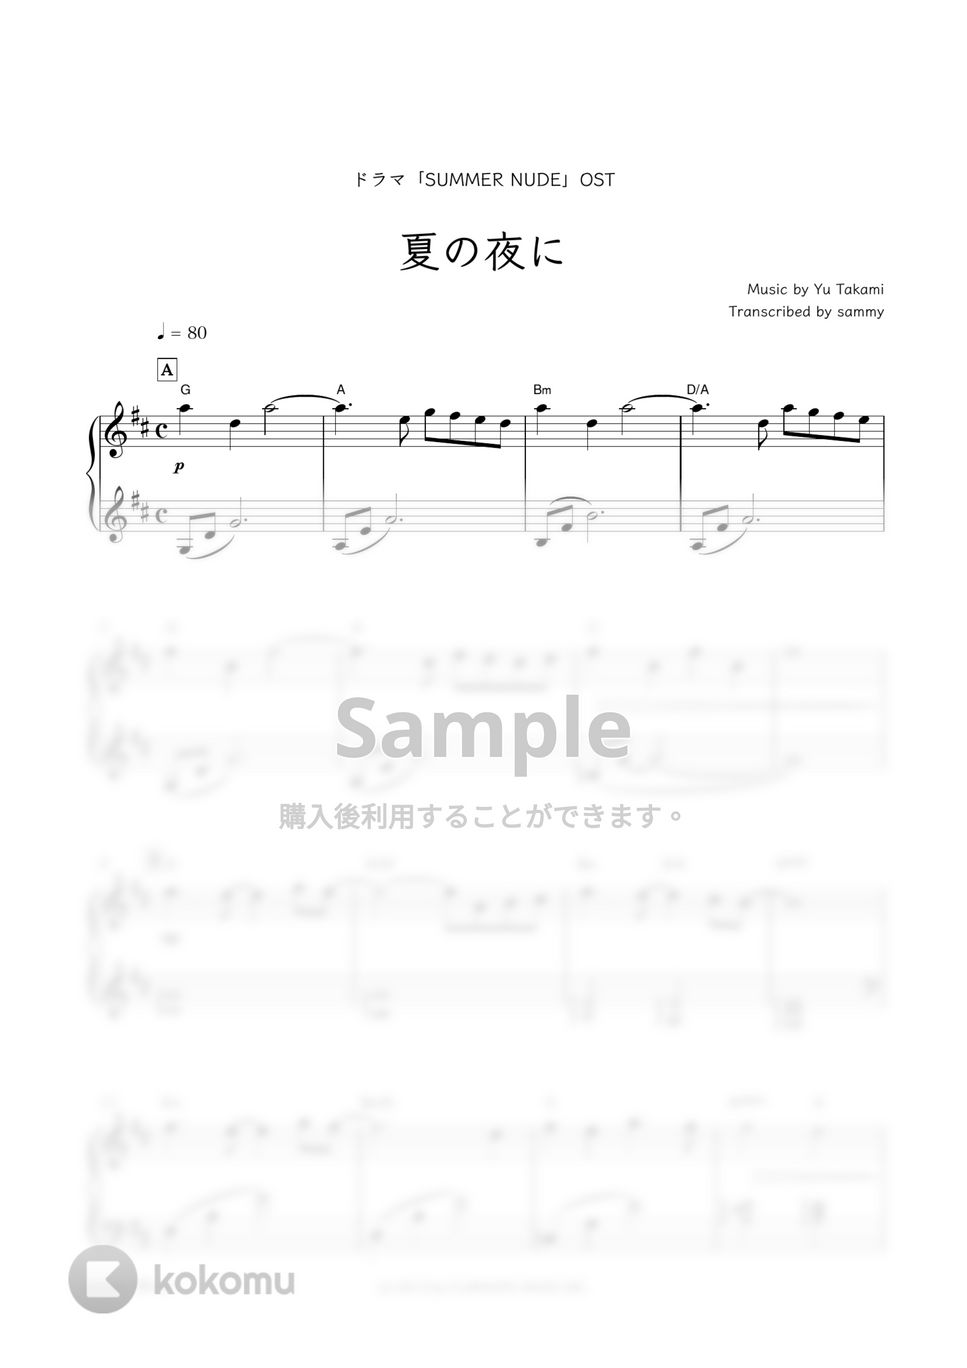 ドラマ『SUMMER NUDE』OST - 夏の夜に by sammy